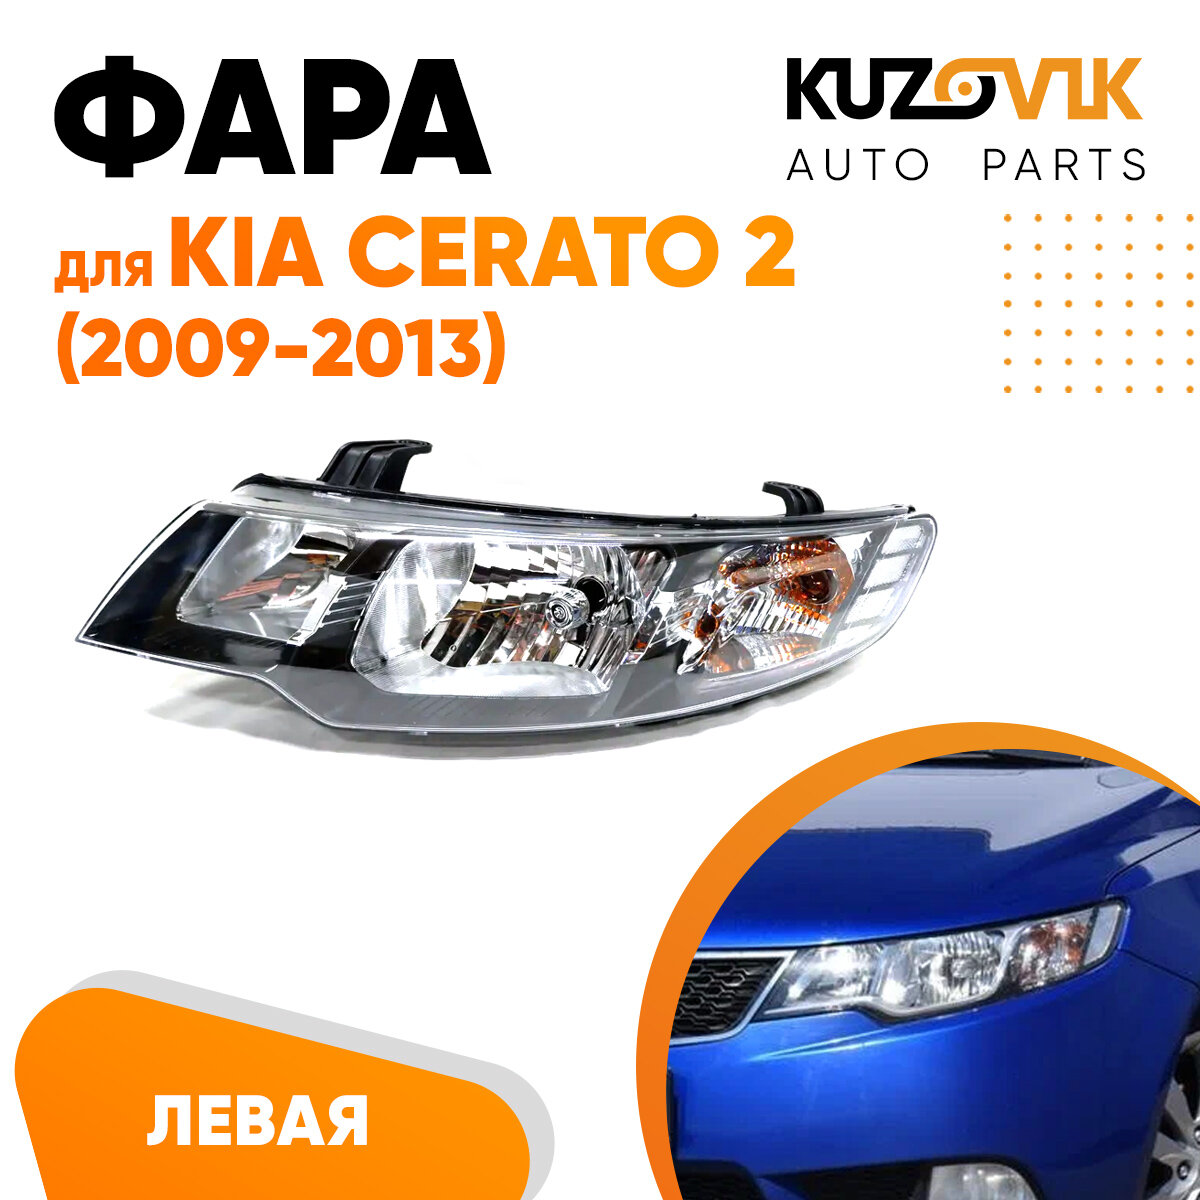 Фара левая для Киа Церато Kia Cerato 2 (2009-2013) механический корректор